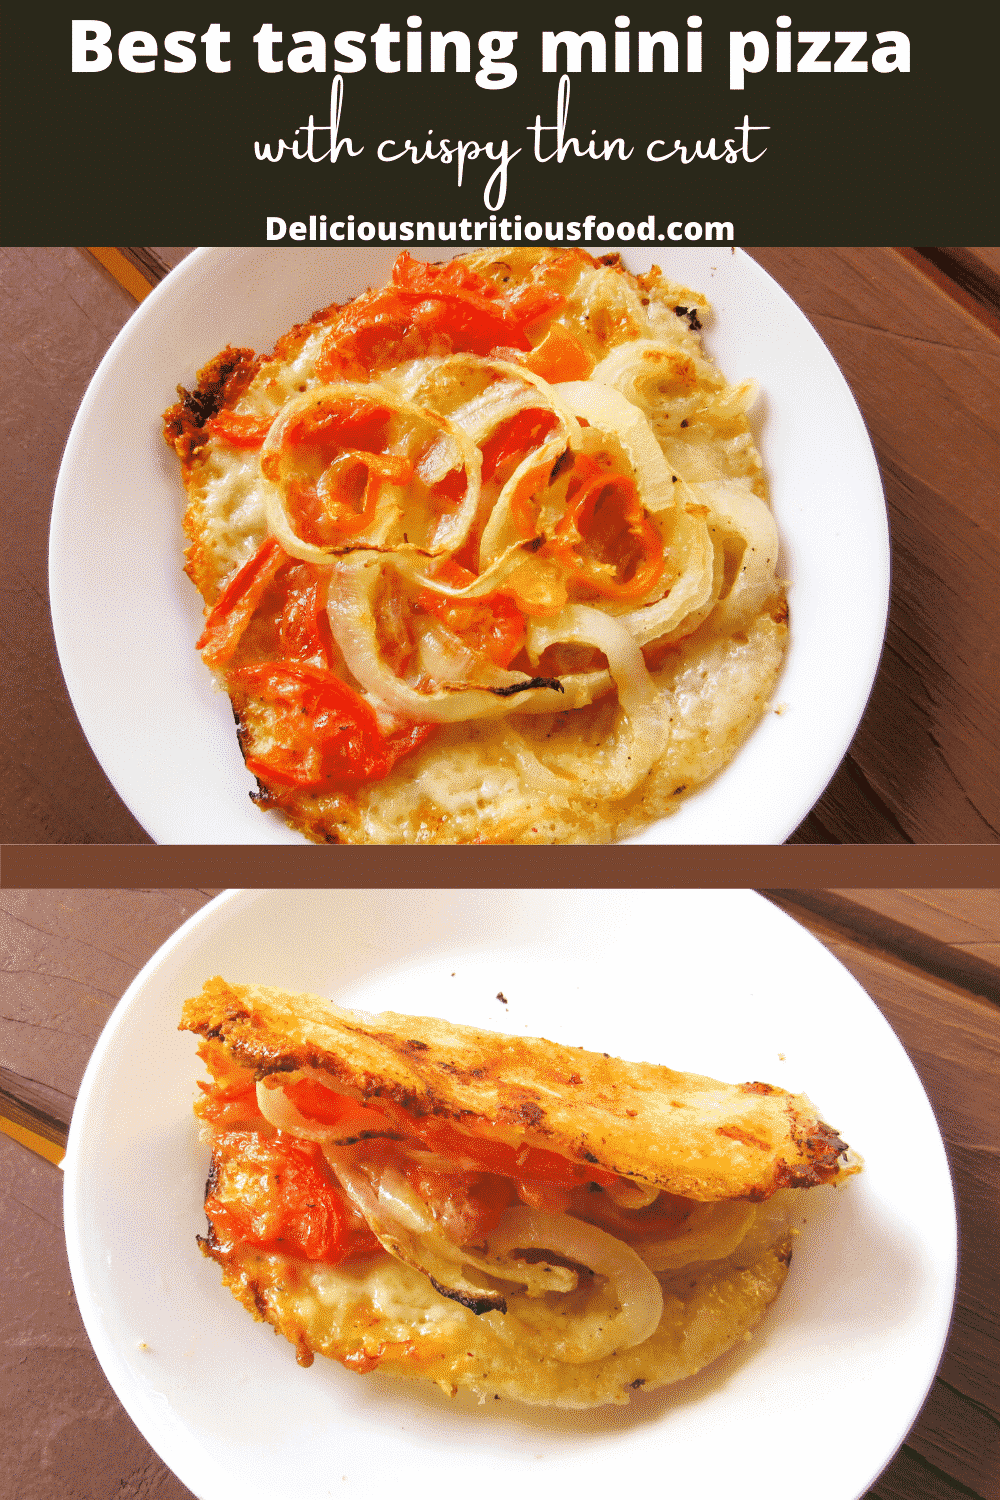 The best sourdough starter mini pizza made easy #minipizzarecipe #minipizzaoven #sourdoughstarterpizzadoughquick #sourdoughpizzacrust #easysourdoughpizzacrust #sourdoughpizzarecipe #sourdoughpizzadoughrecipe #sourdoughpizza #minipizza #sourdoughpizzadoughfromstarter #pizzadoughwithsourdoughstarter #sourdoughstarterpizza #sourdoughstarterpizzacrust #pizzadoughwithleftoversourdoughstarter #pizzaidea #pizzabrunch #pizzadinner #ilovepizza #pizzasandwich #bestpizza #pizzahealthyrecipe #pizzarecipehomemade #skinypizzarecipe #makeyourownpizza #pizzacrustrecipe #flatbreadpizza #minipizzarecipe #homemademinipizza #castironrecipes #sourdoughtortillas #sourdoughdiscardrecipe #recipesilove #tortillasdinner #deliciousnutritiousfoods #brunchfoodidea #brunchpizzarecipe #simplehealthydinnerrecipe #simplehealthylunchrecipe #easylunchrecipe #simplerecipes #healthyrecipes #maindishrecipe #healthymaindish #breakfastrecipes #fathersday #breakfastbrunch #healthybreakfast #sourdoughbreakfast #sourdoughstarter #breakfastpizza #castironrecipeseasy #castironpizza #homemade 